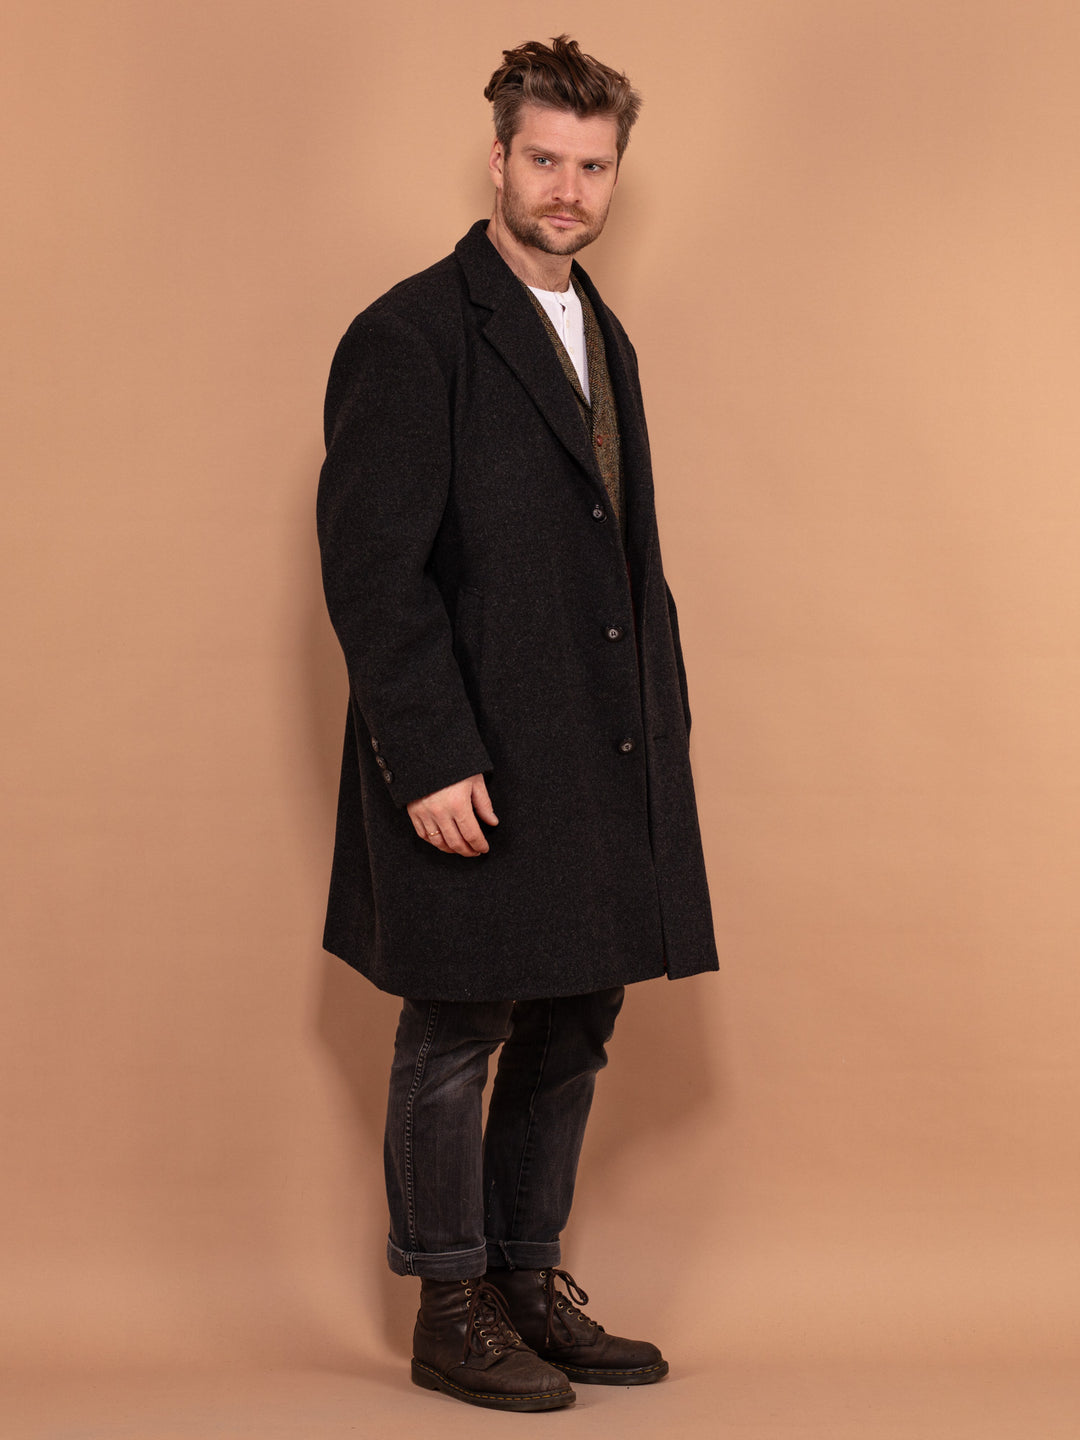 Wool Blend Coat 90s, Wool Coat In Gray Size XL, Vintage Wool Coat, Autumn Wool Coat, 90s Coat, Minimalist Coat, Men Vintage Outerwear